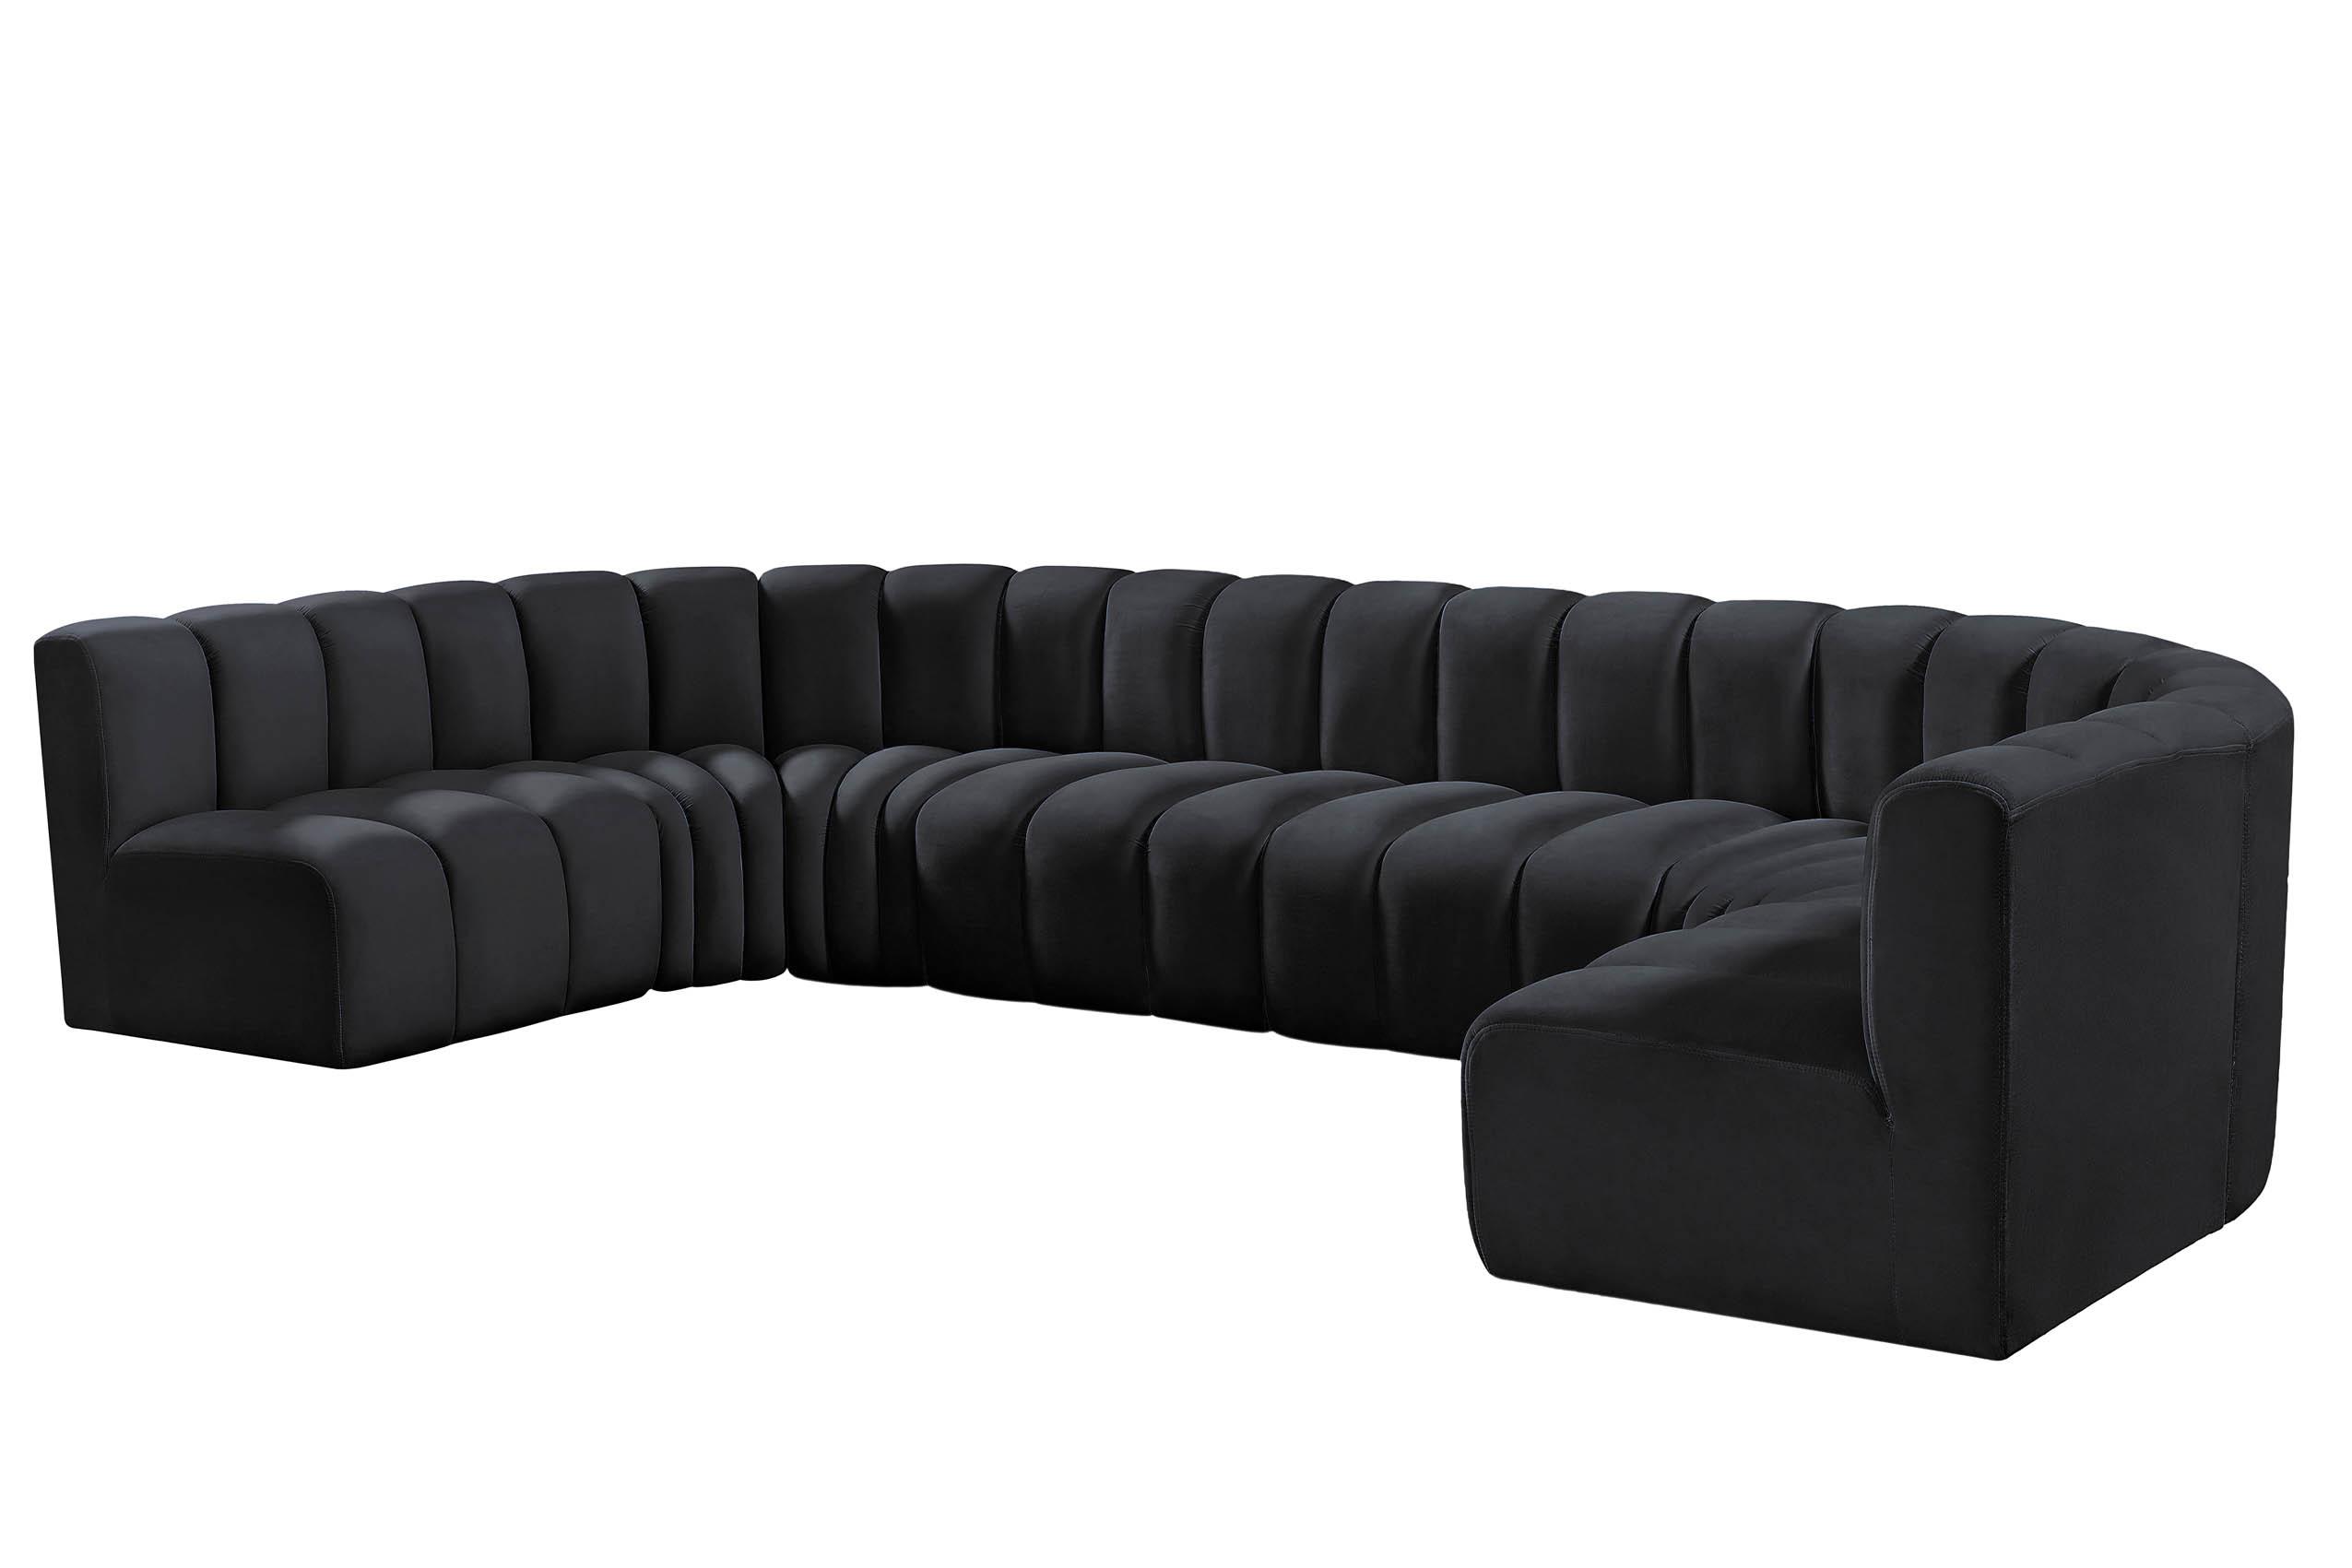 

    
103Black-S8A Meridian Furniture Modular Sectional Sofa
